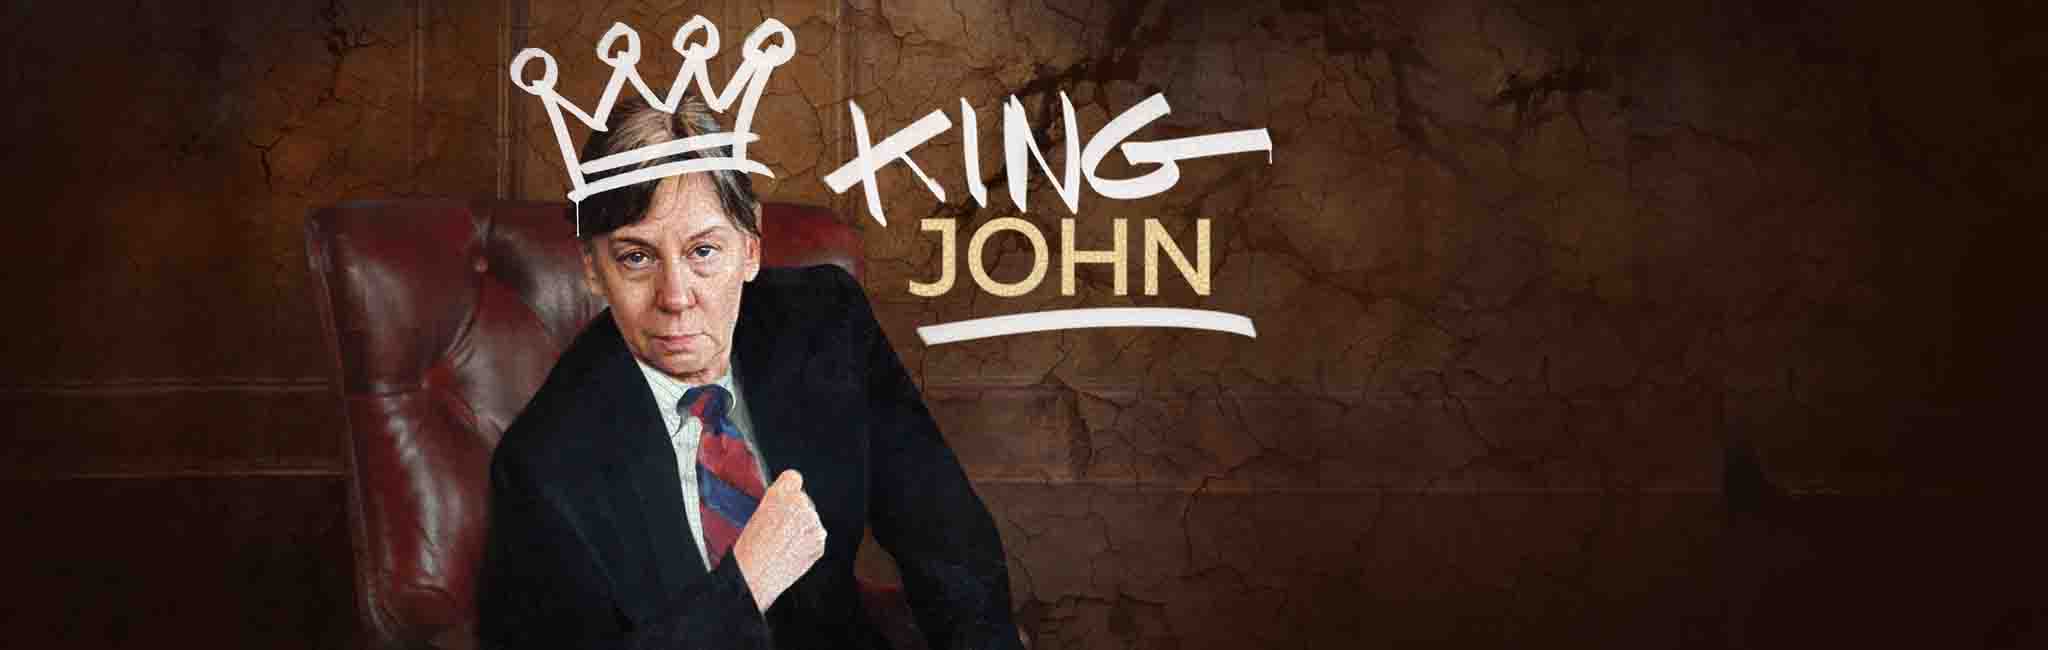 King John play image